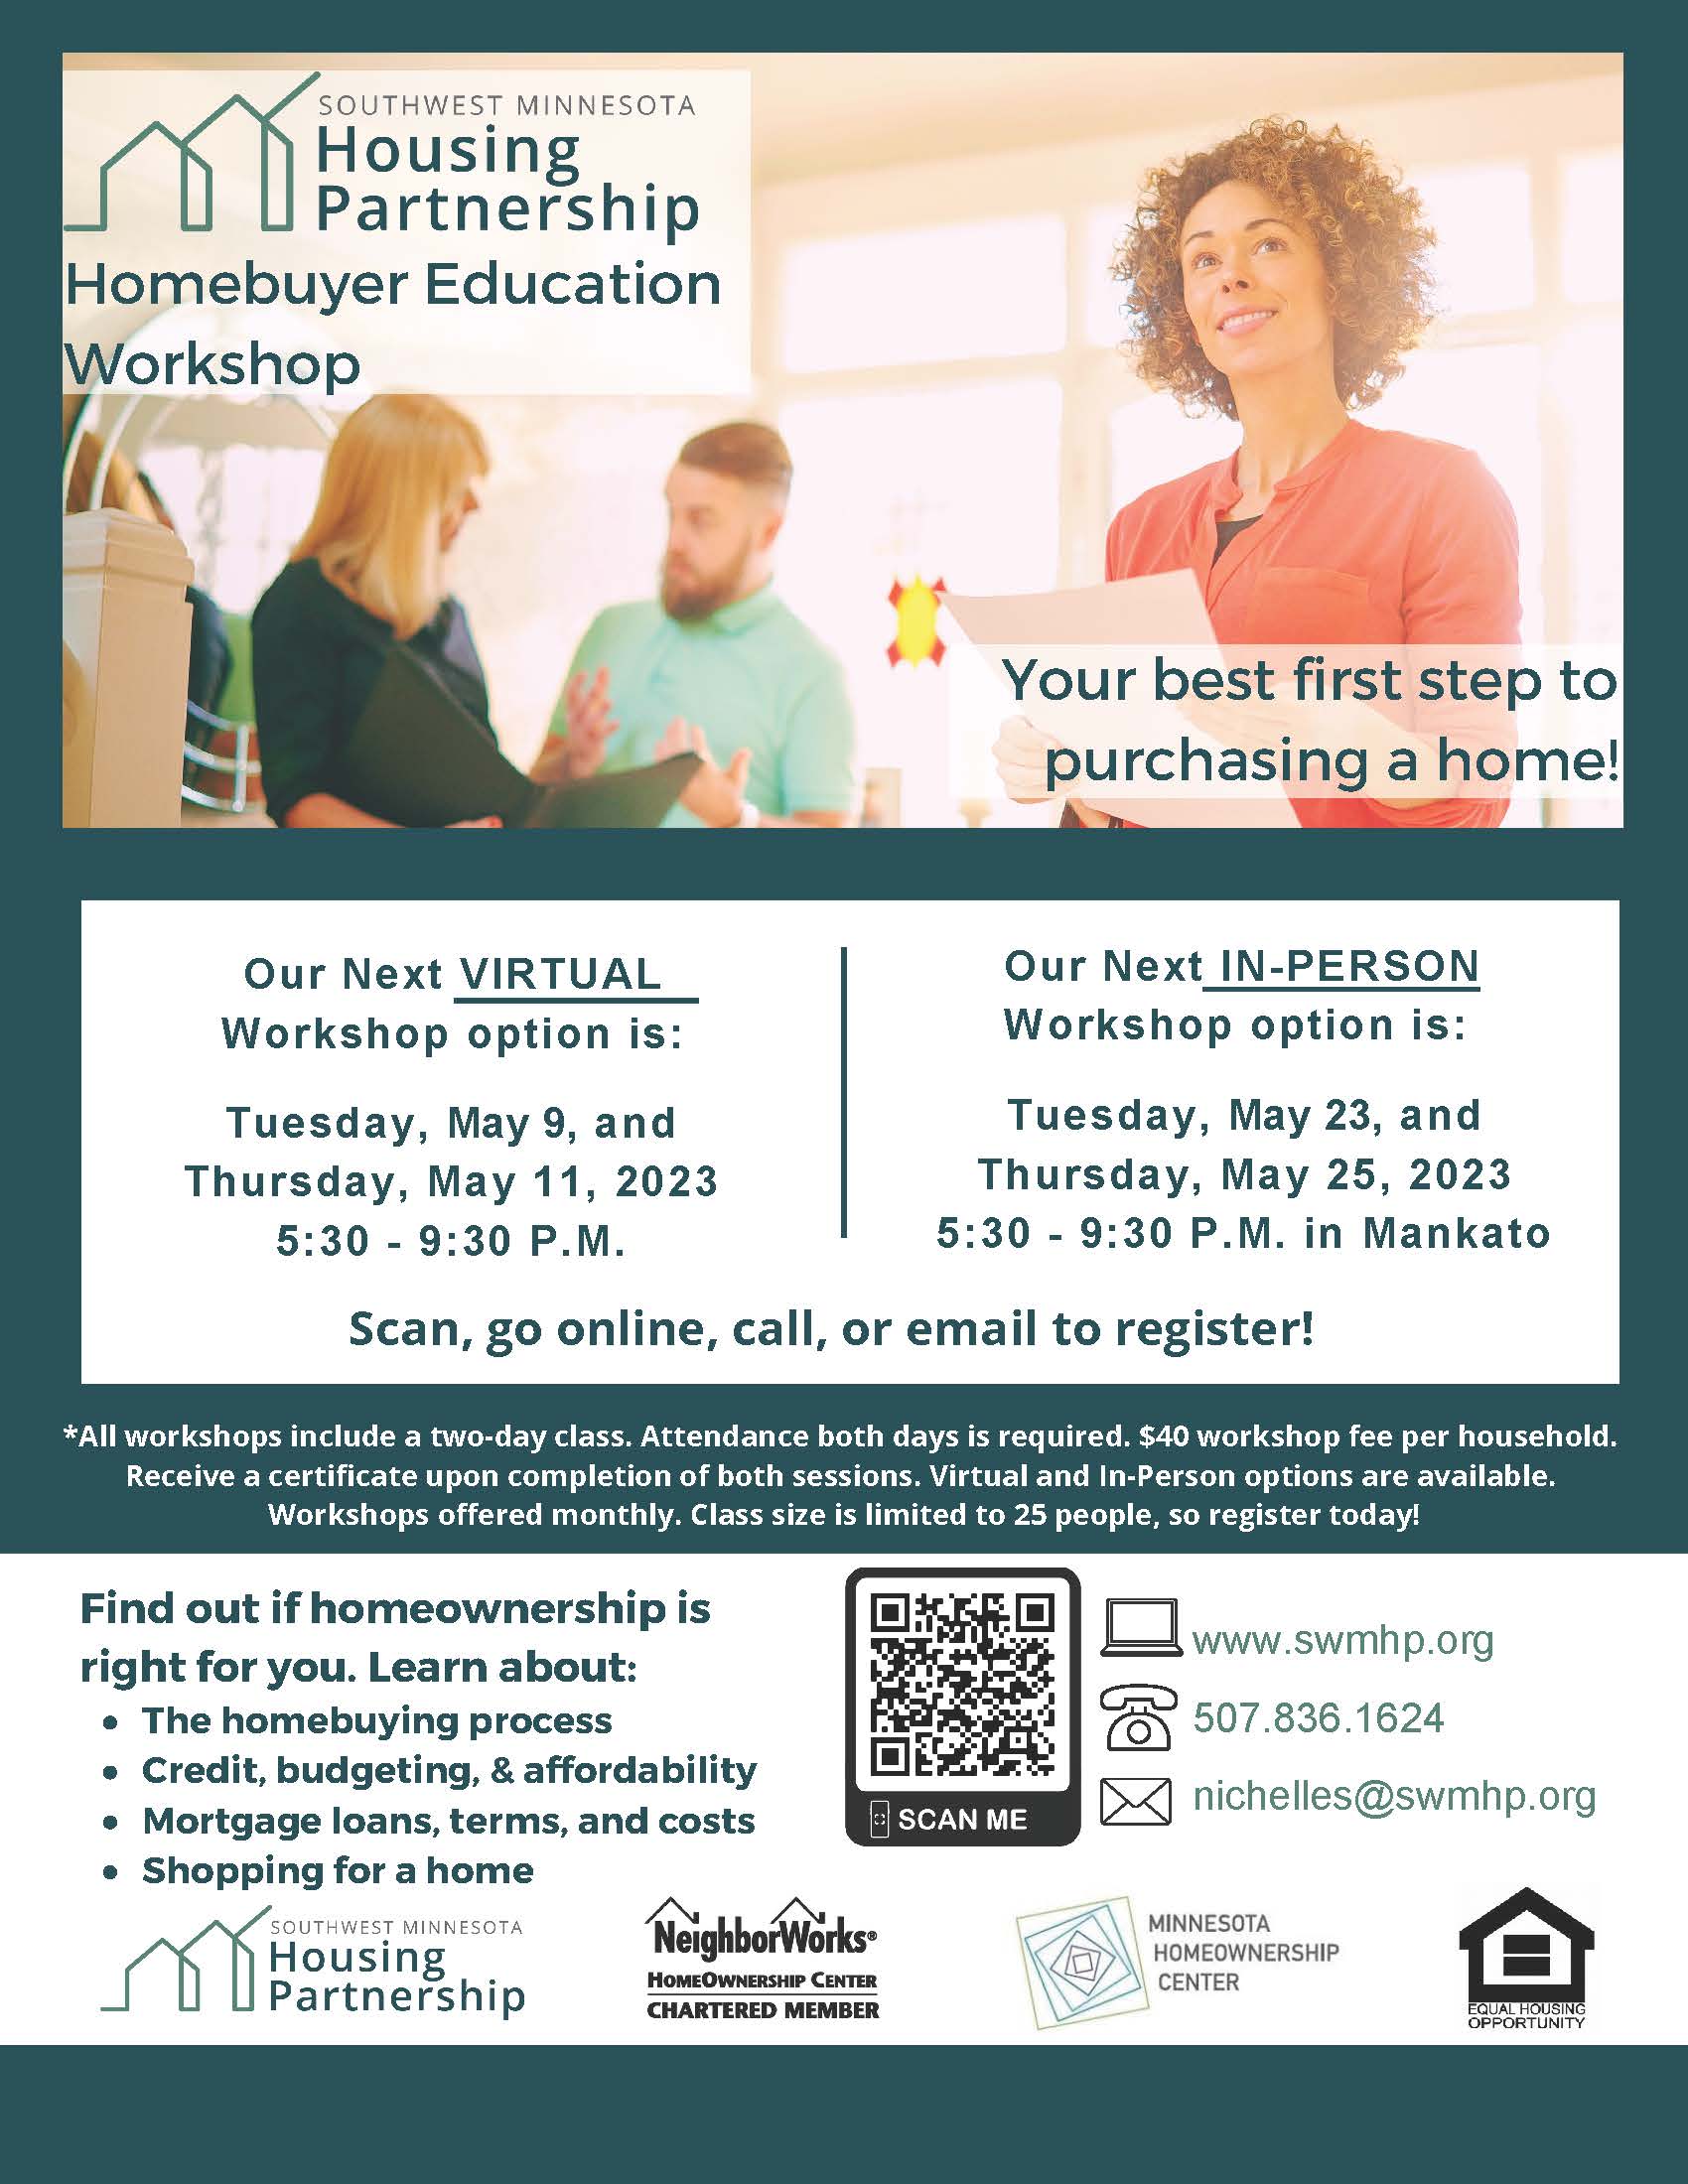 Event Flyer for Southwest Minnesota Housing Partnership